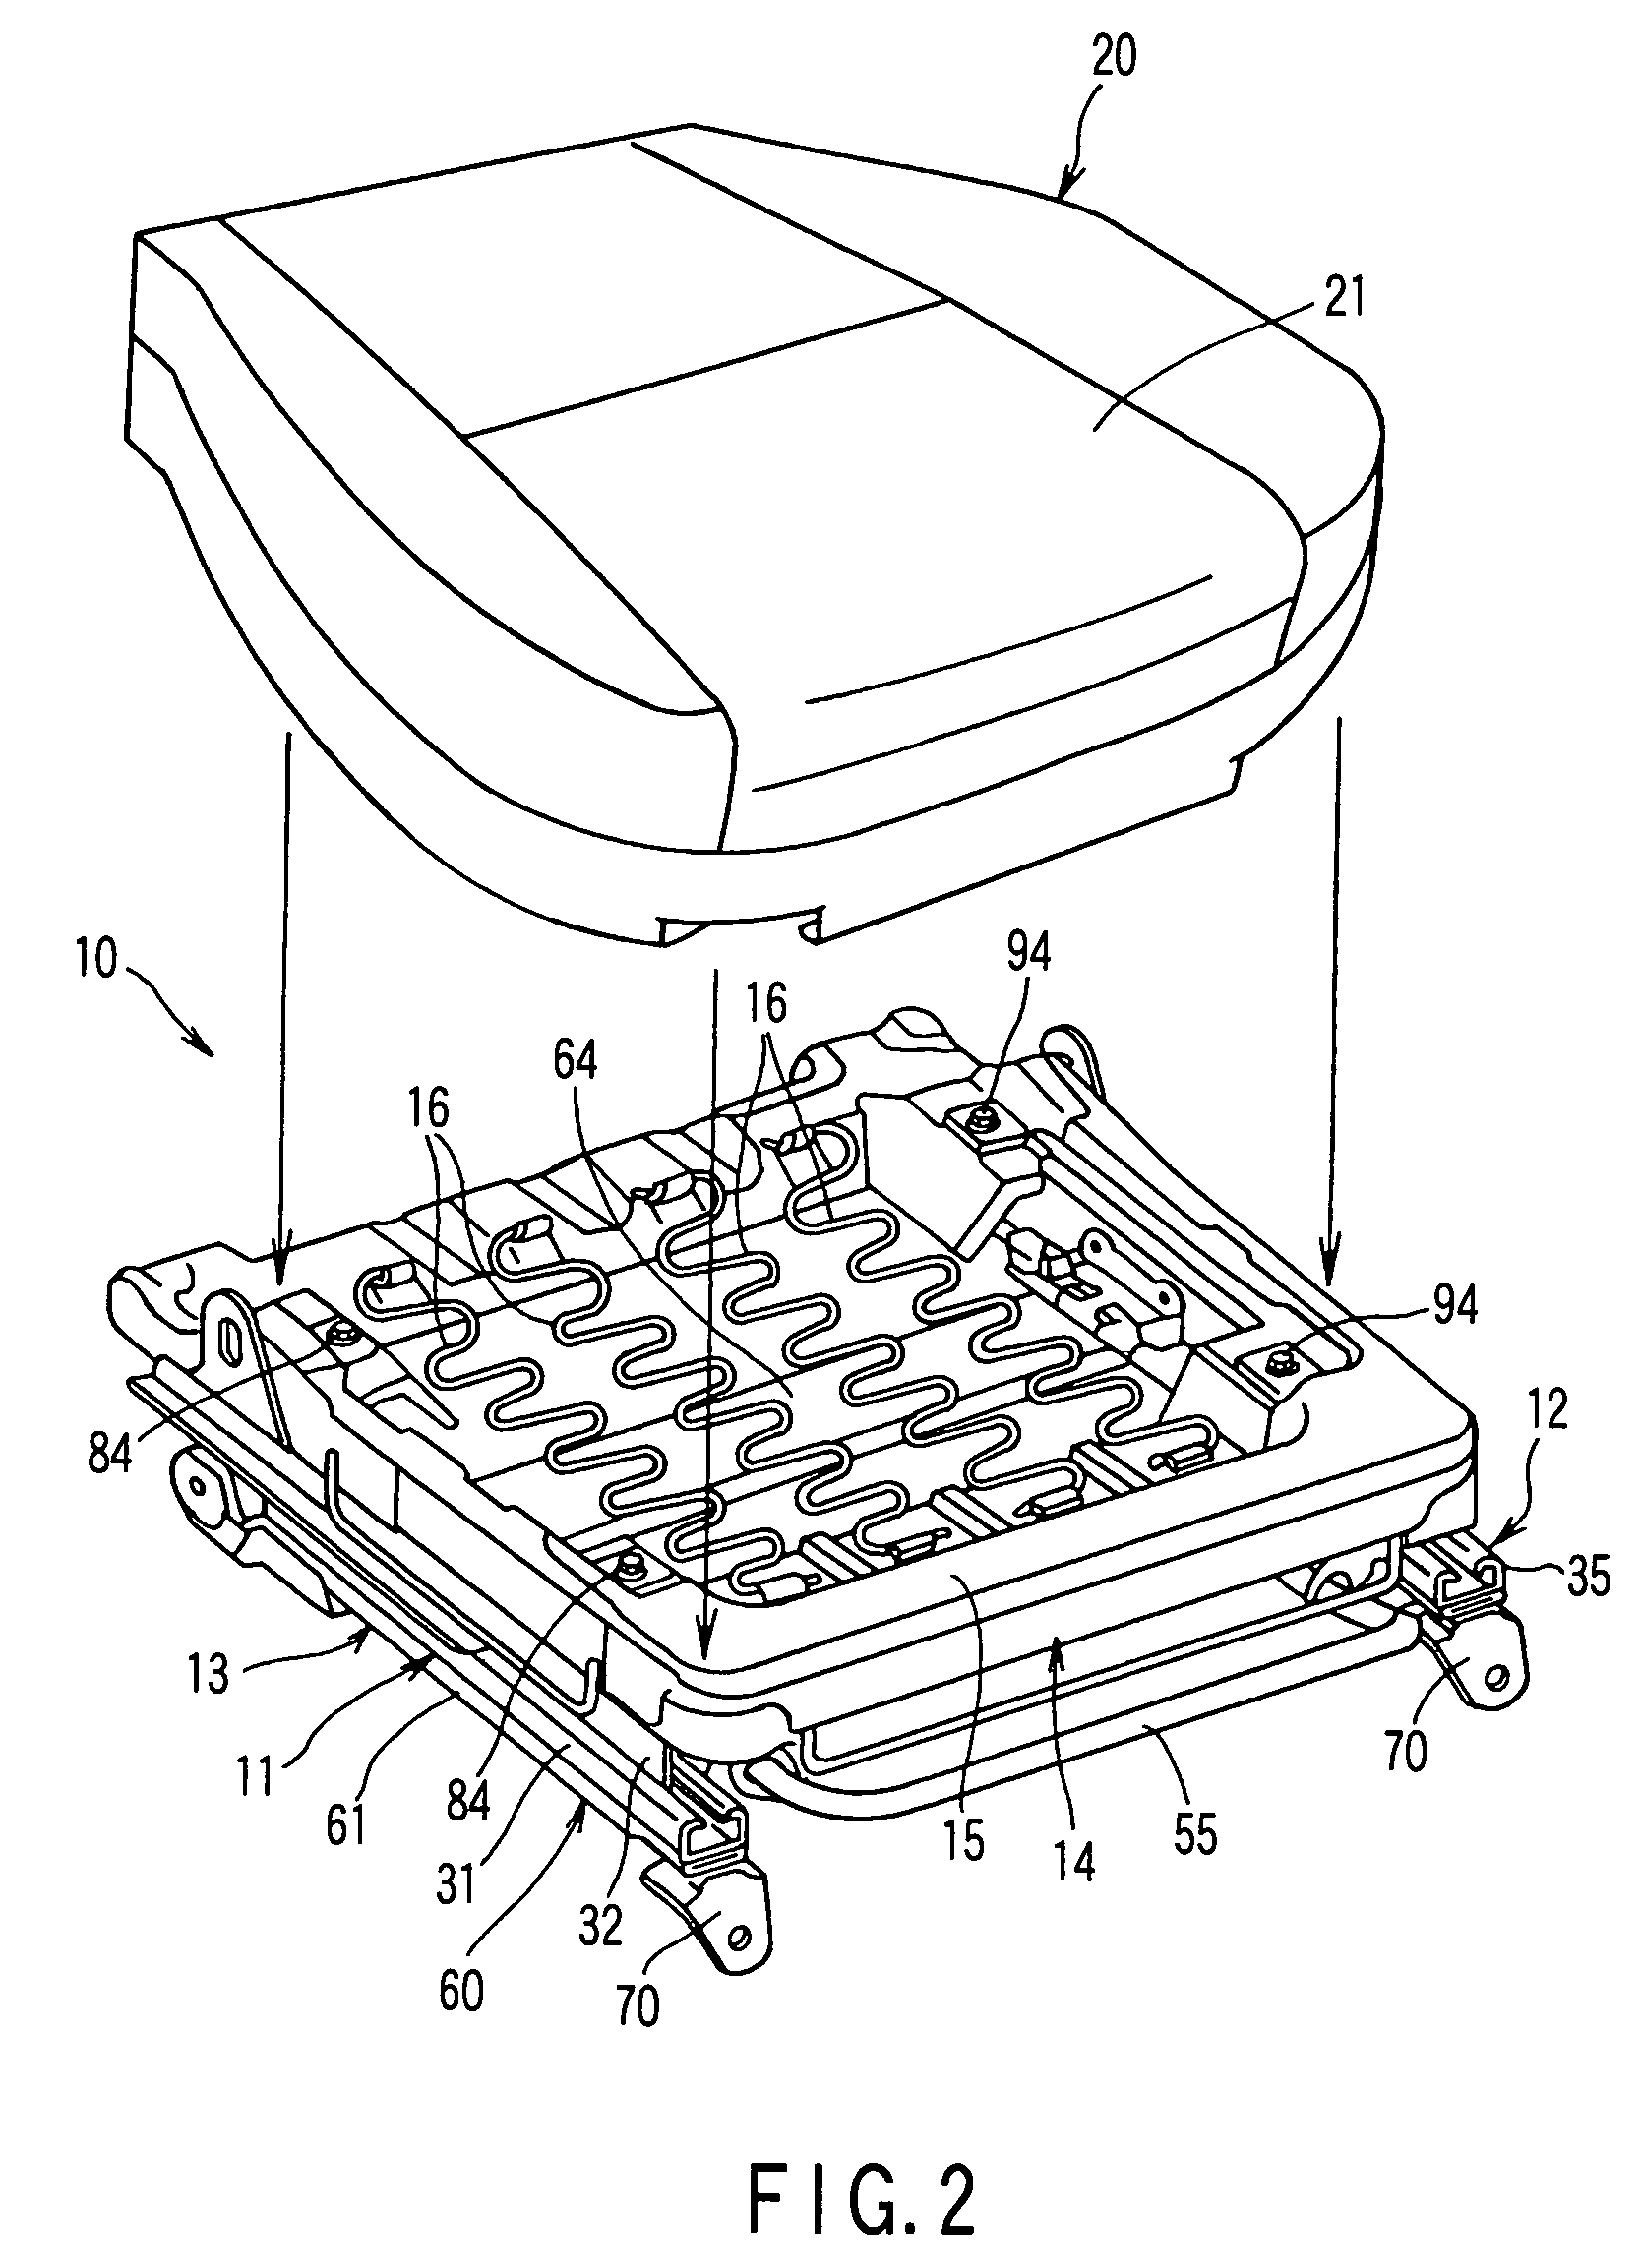 Vehicular seat apparatus